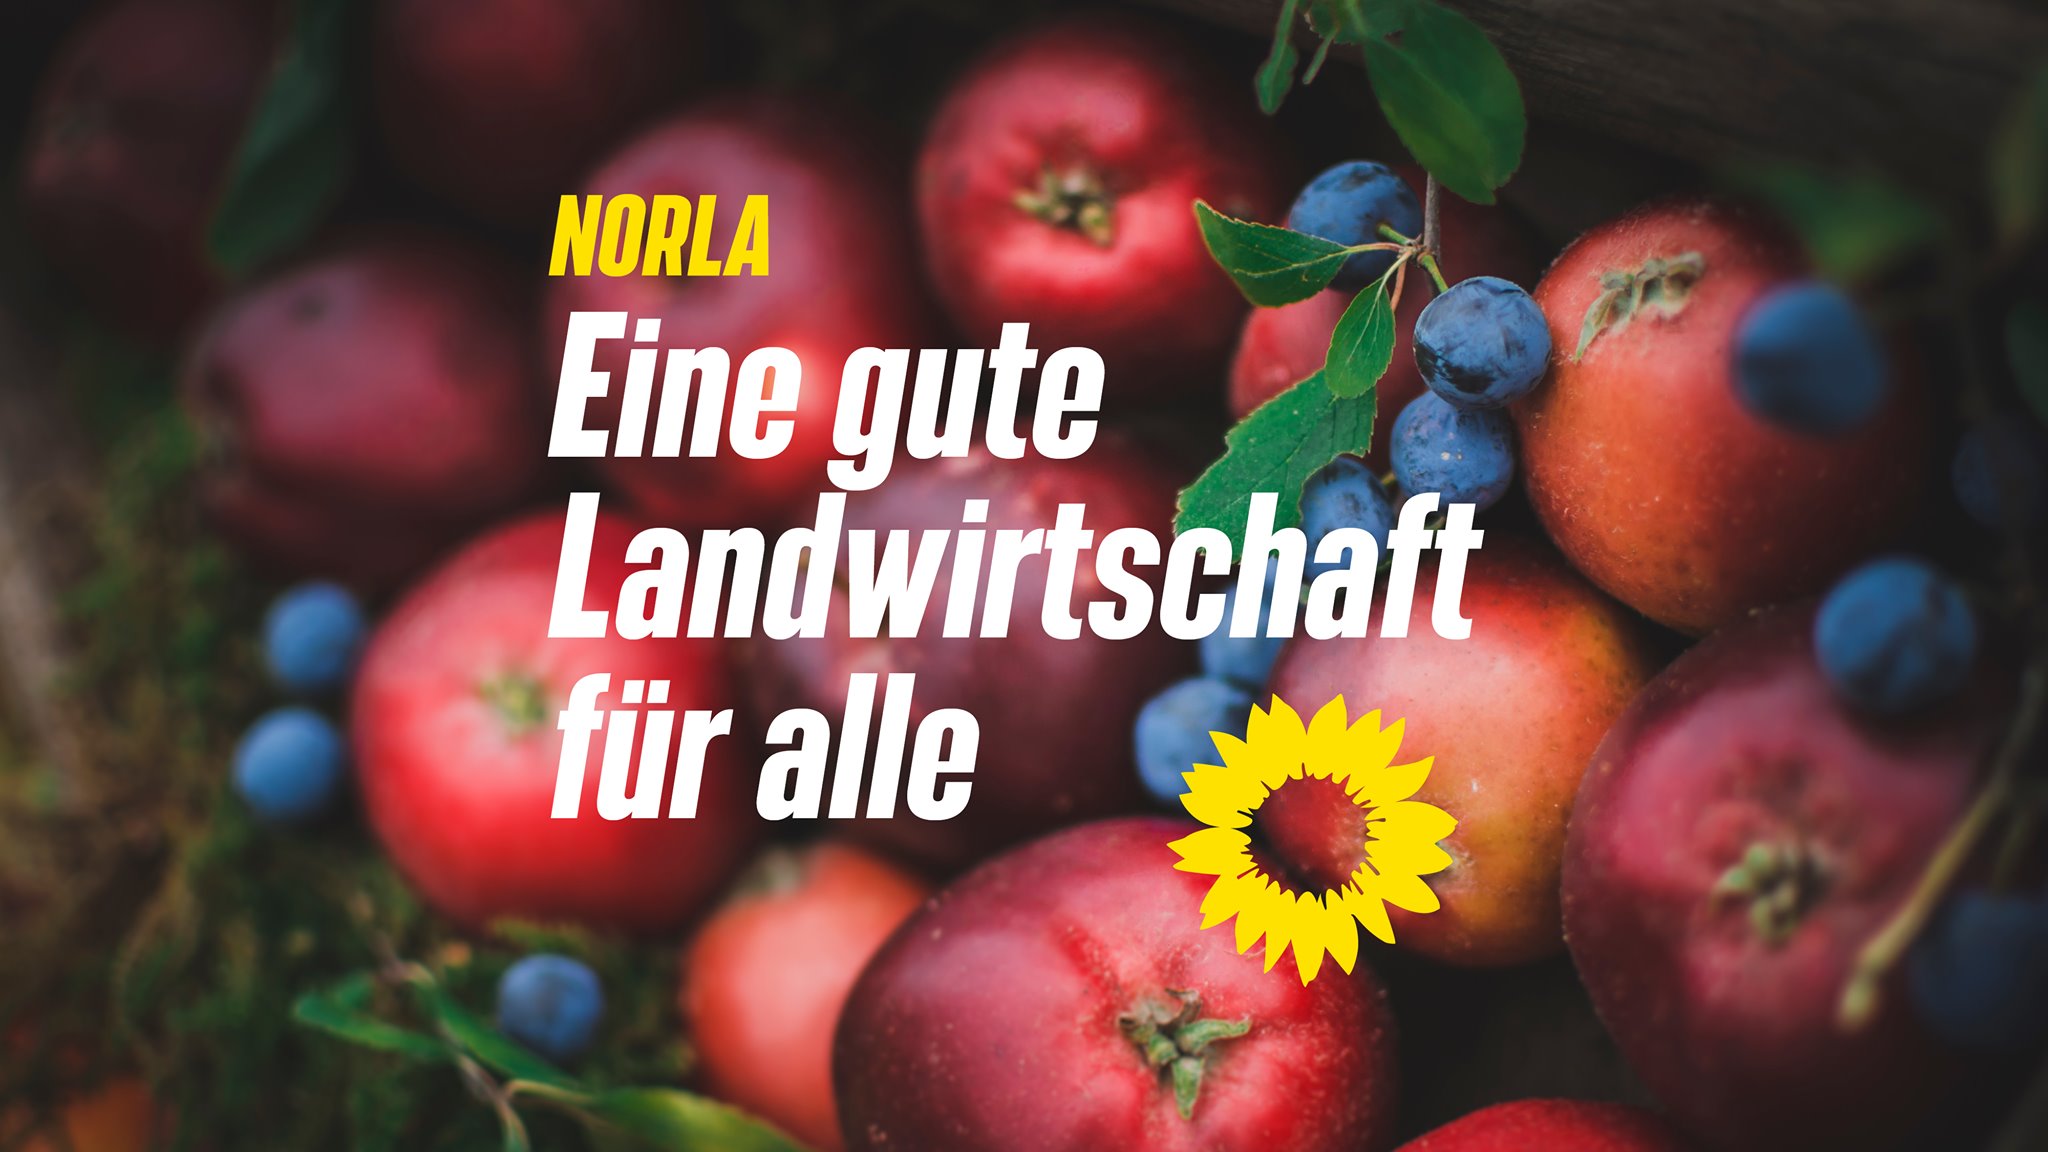 Politische Botschaft im Rahmen der NORLA: Eine gute Landwirtschaft für alle